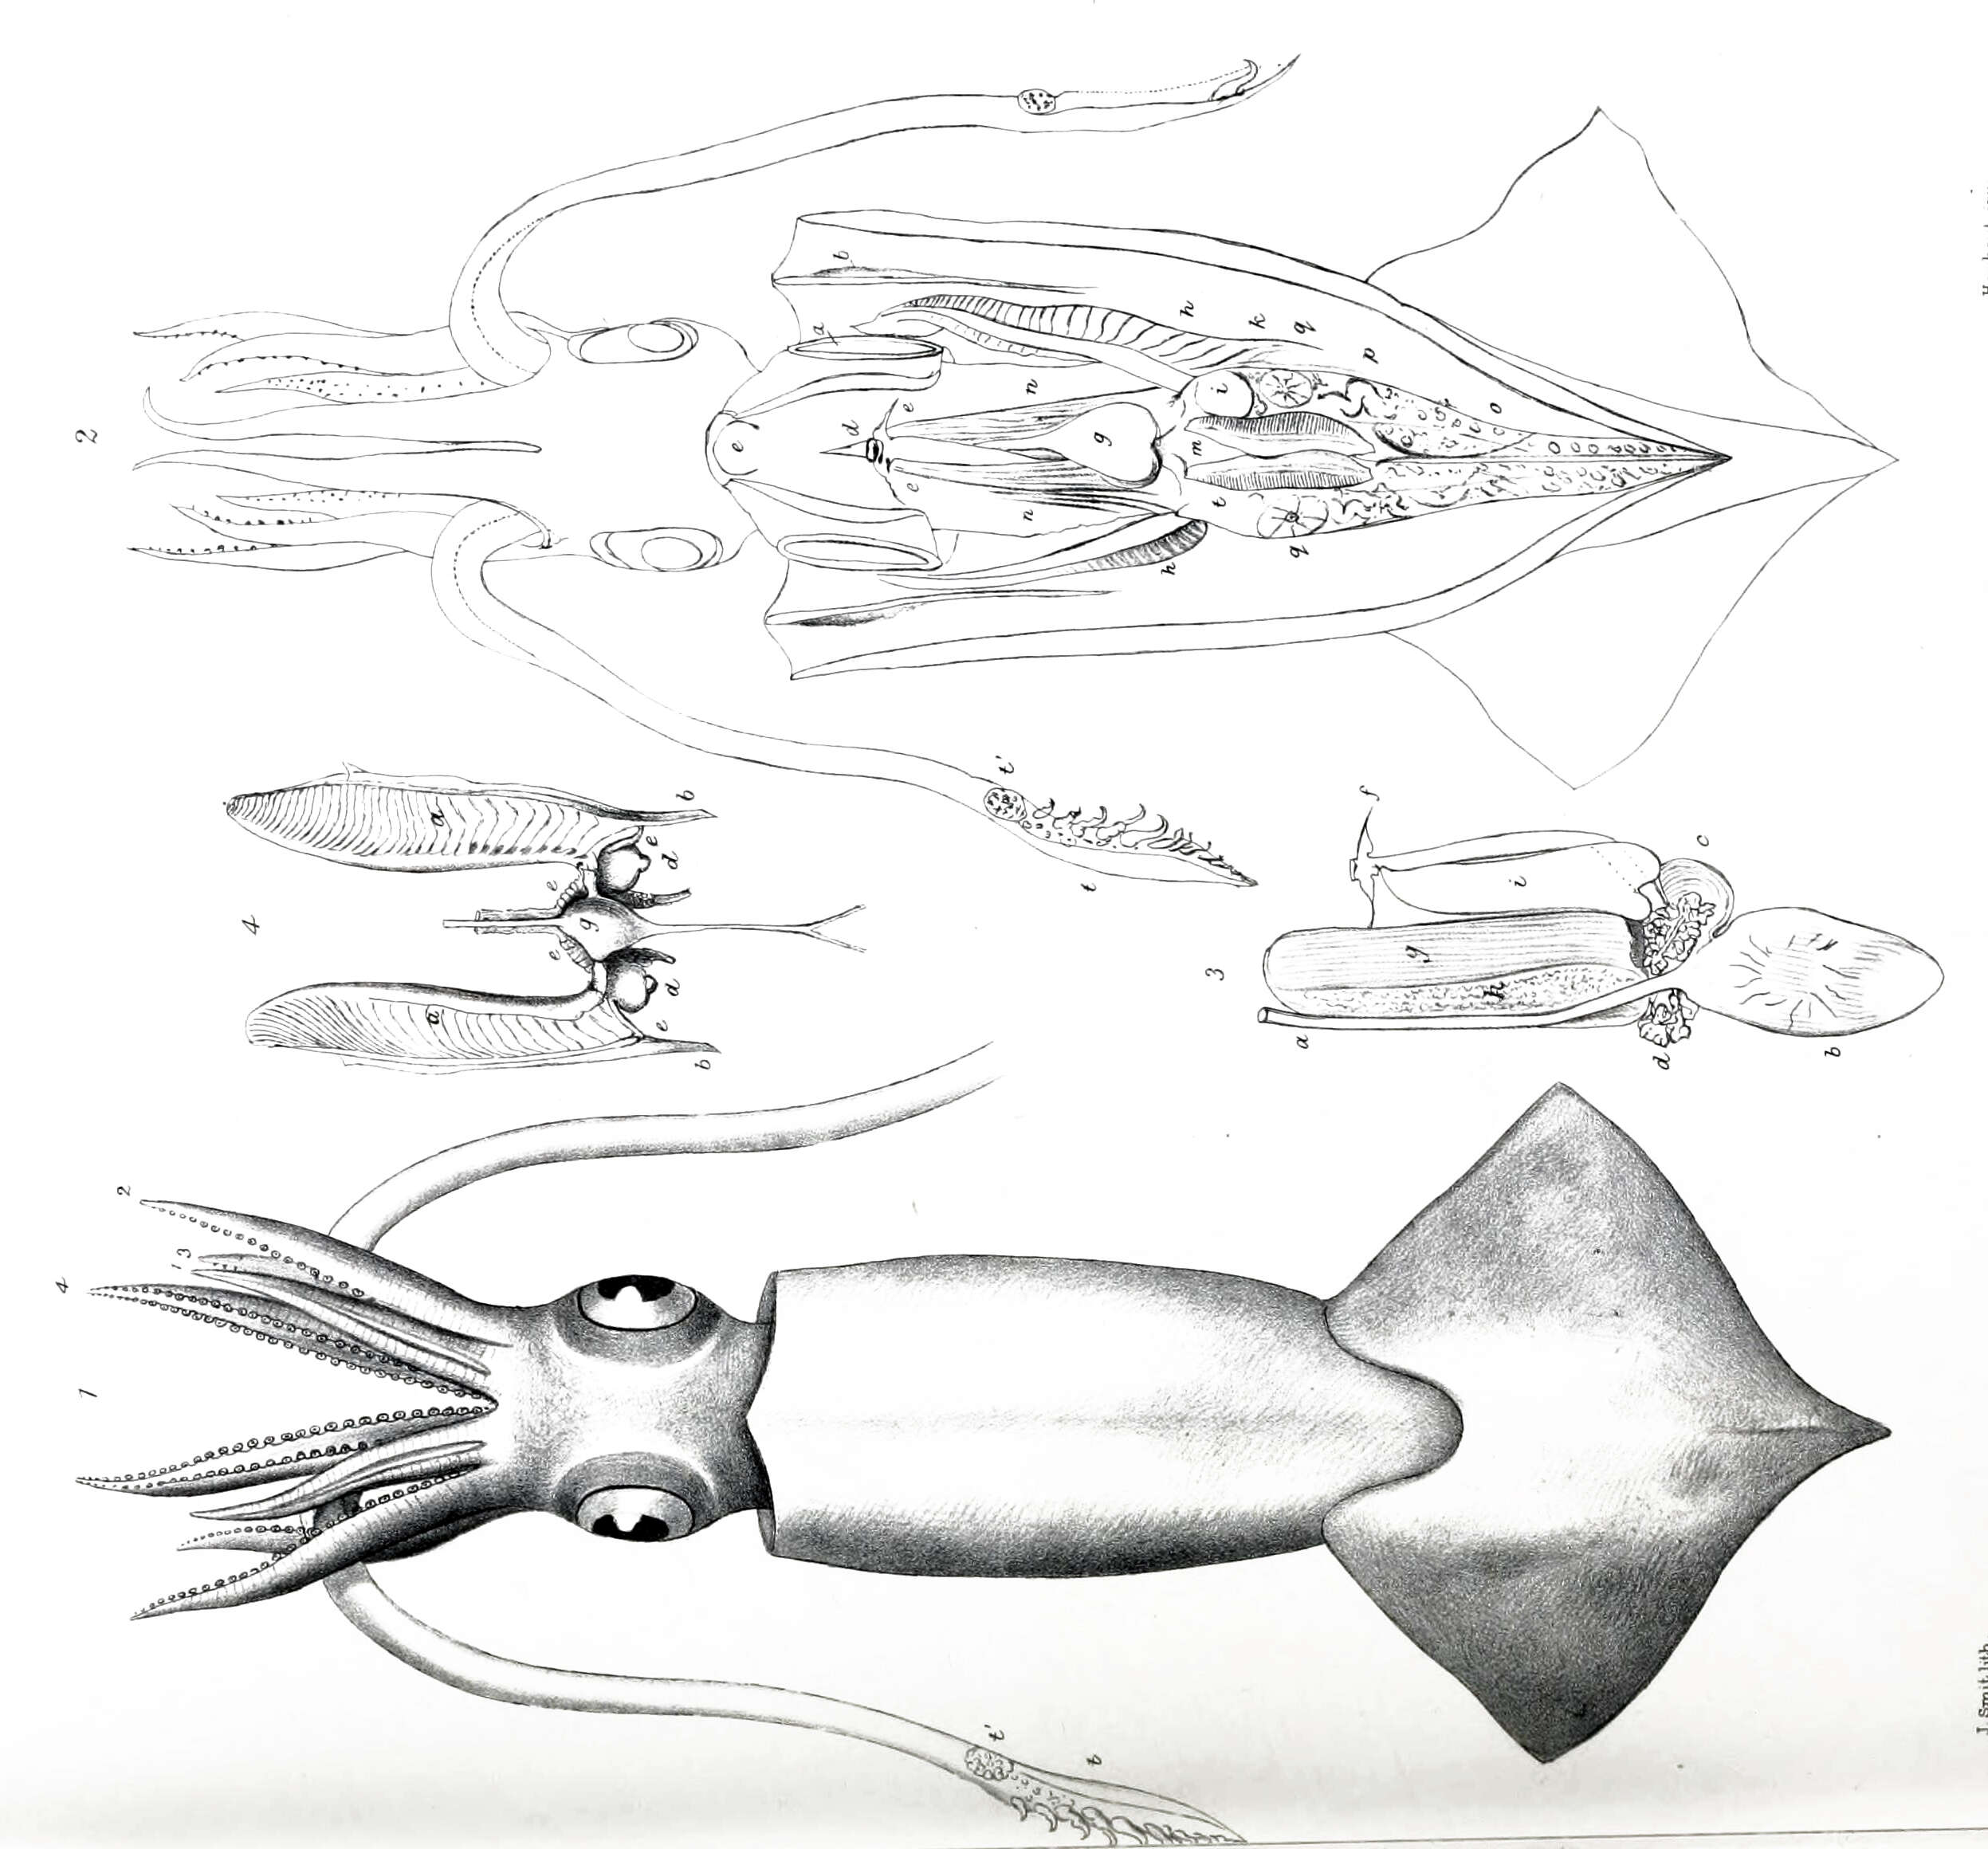 Image of Onychoteuthis Lichtenstein 1818